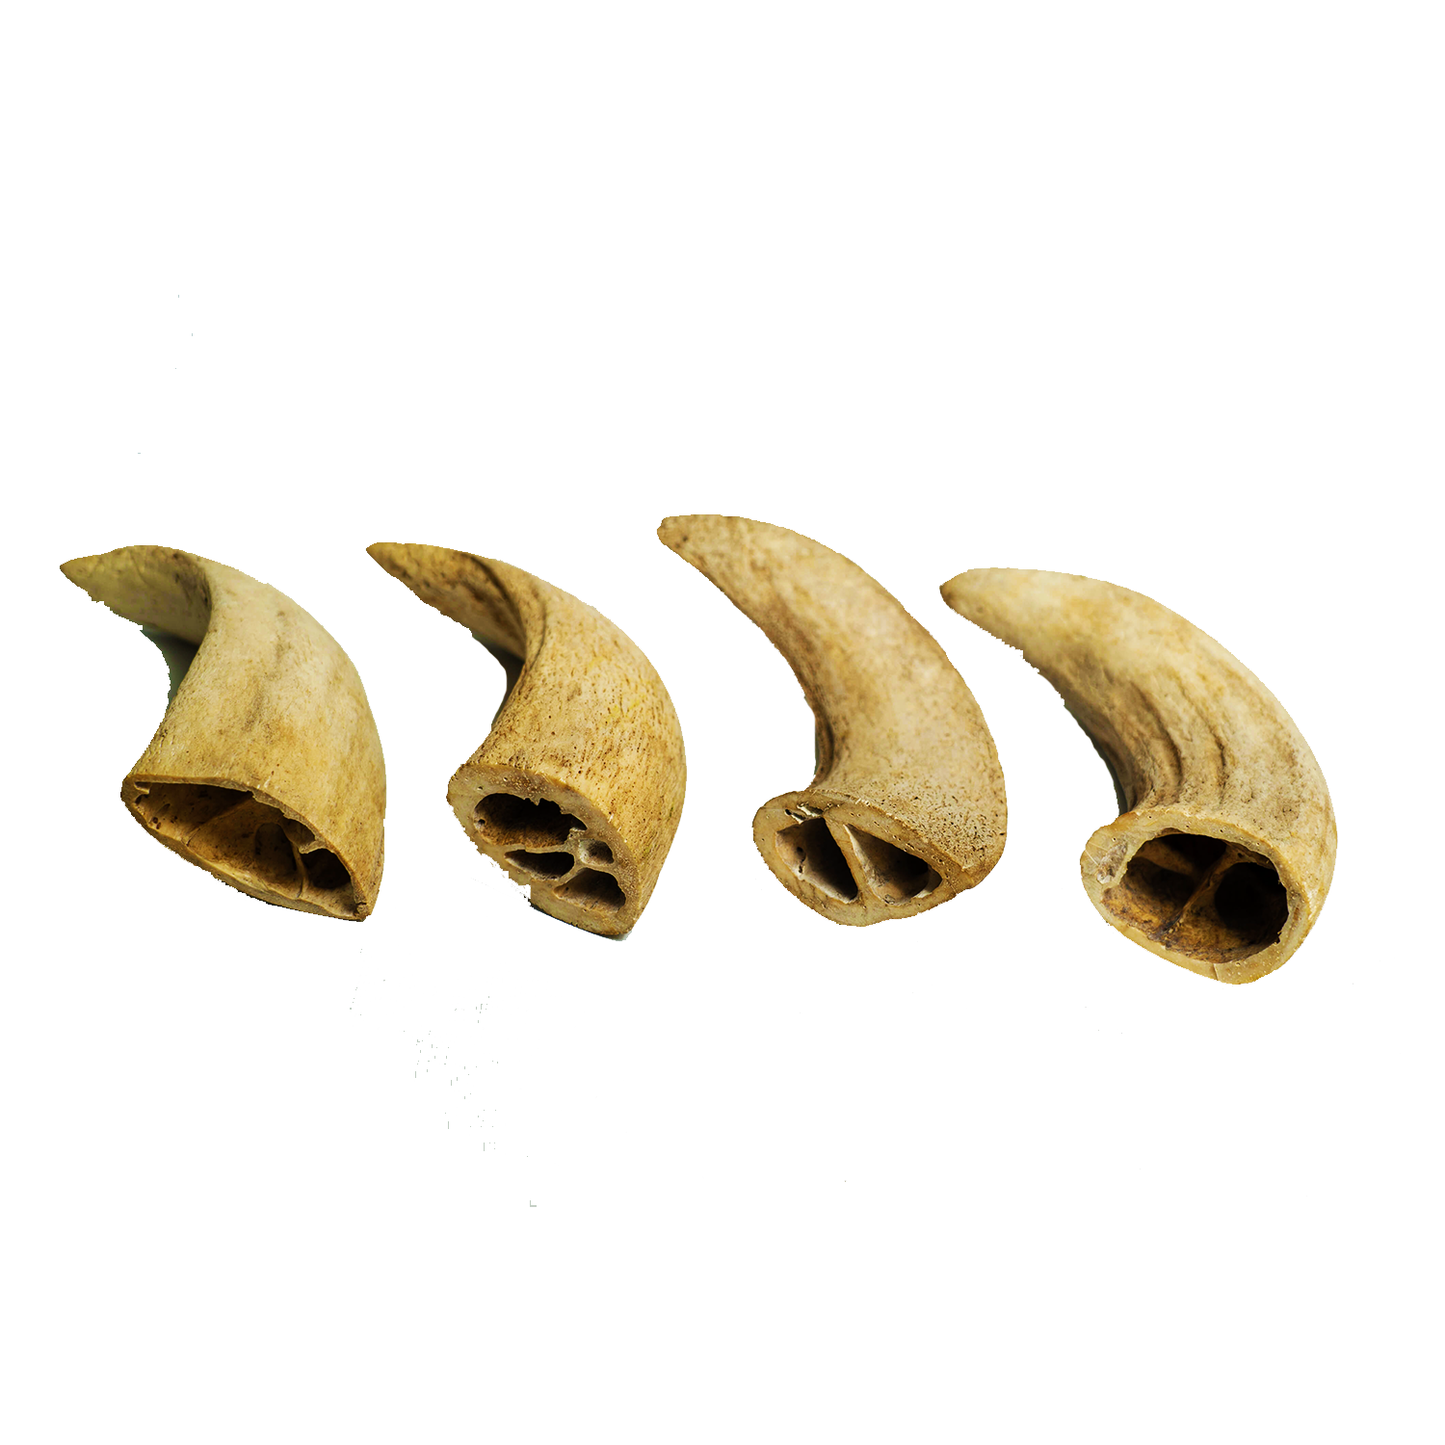 Water Buffalo Horn Core Dog Chews-2 Count-10 oz